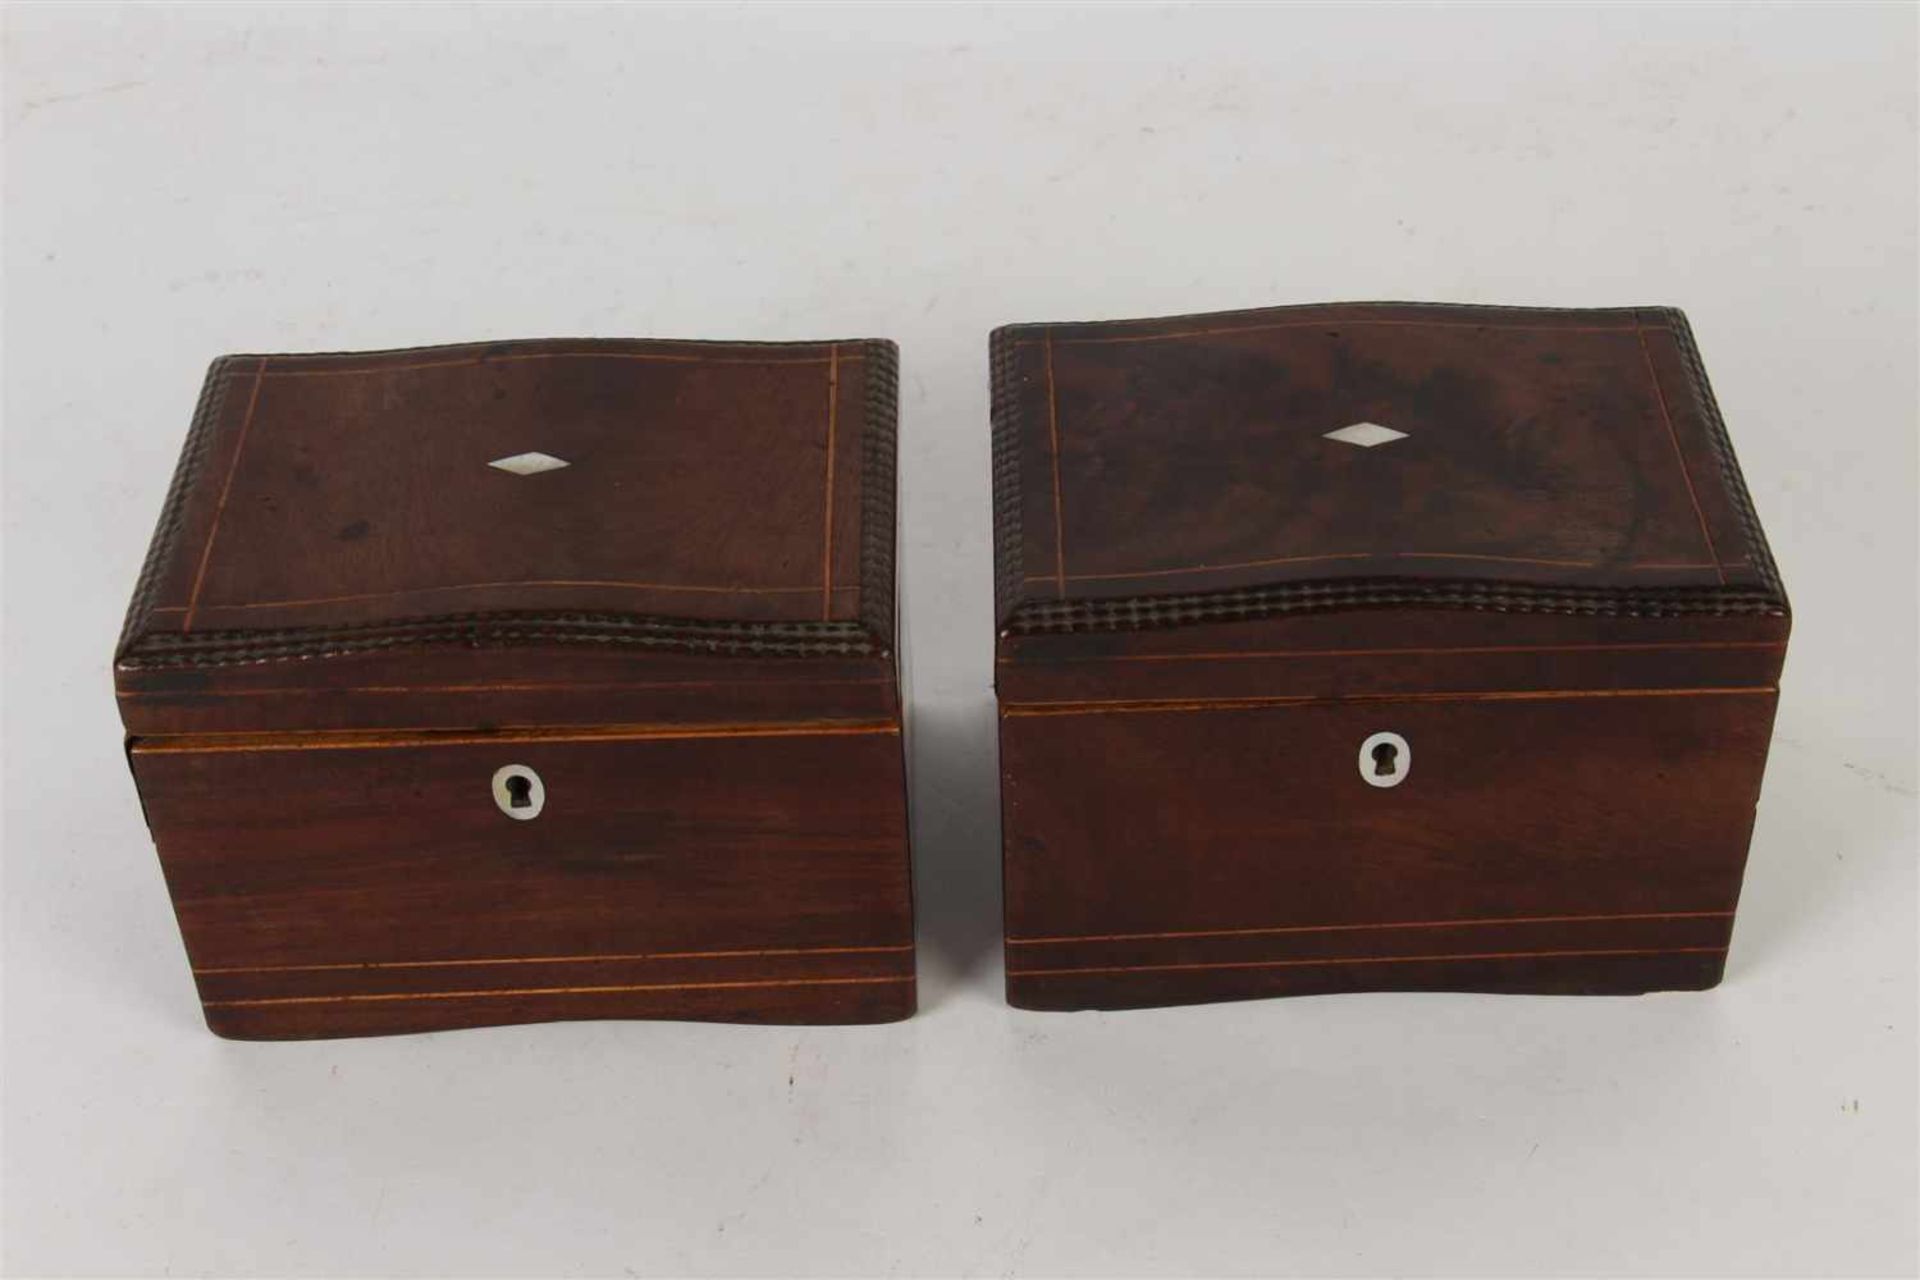 Twee mahoniehouten theekistjes met parelmoer inleg (met defect). Afm: 11 x 15 x 10.8 cm.